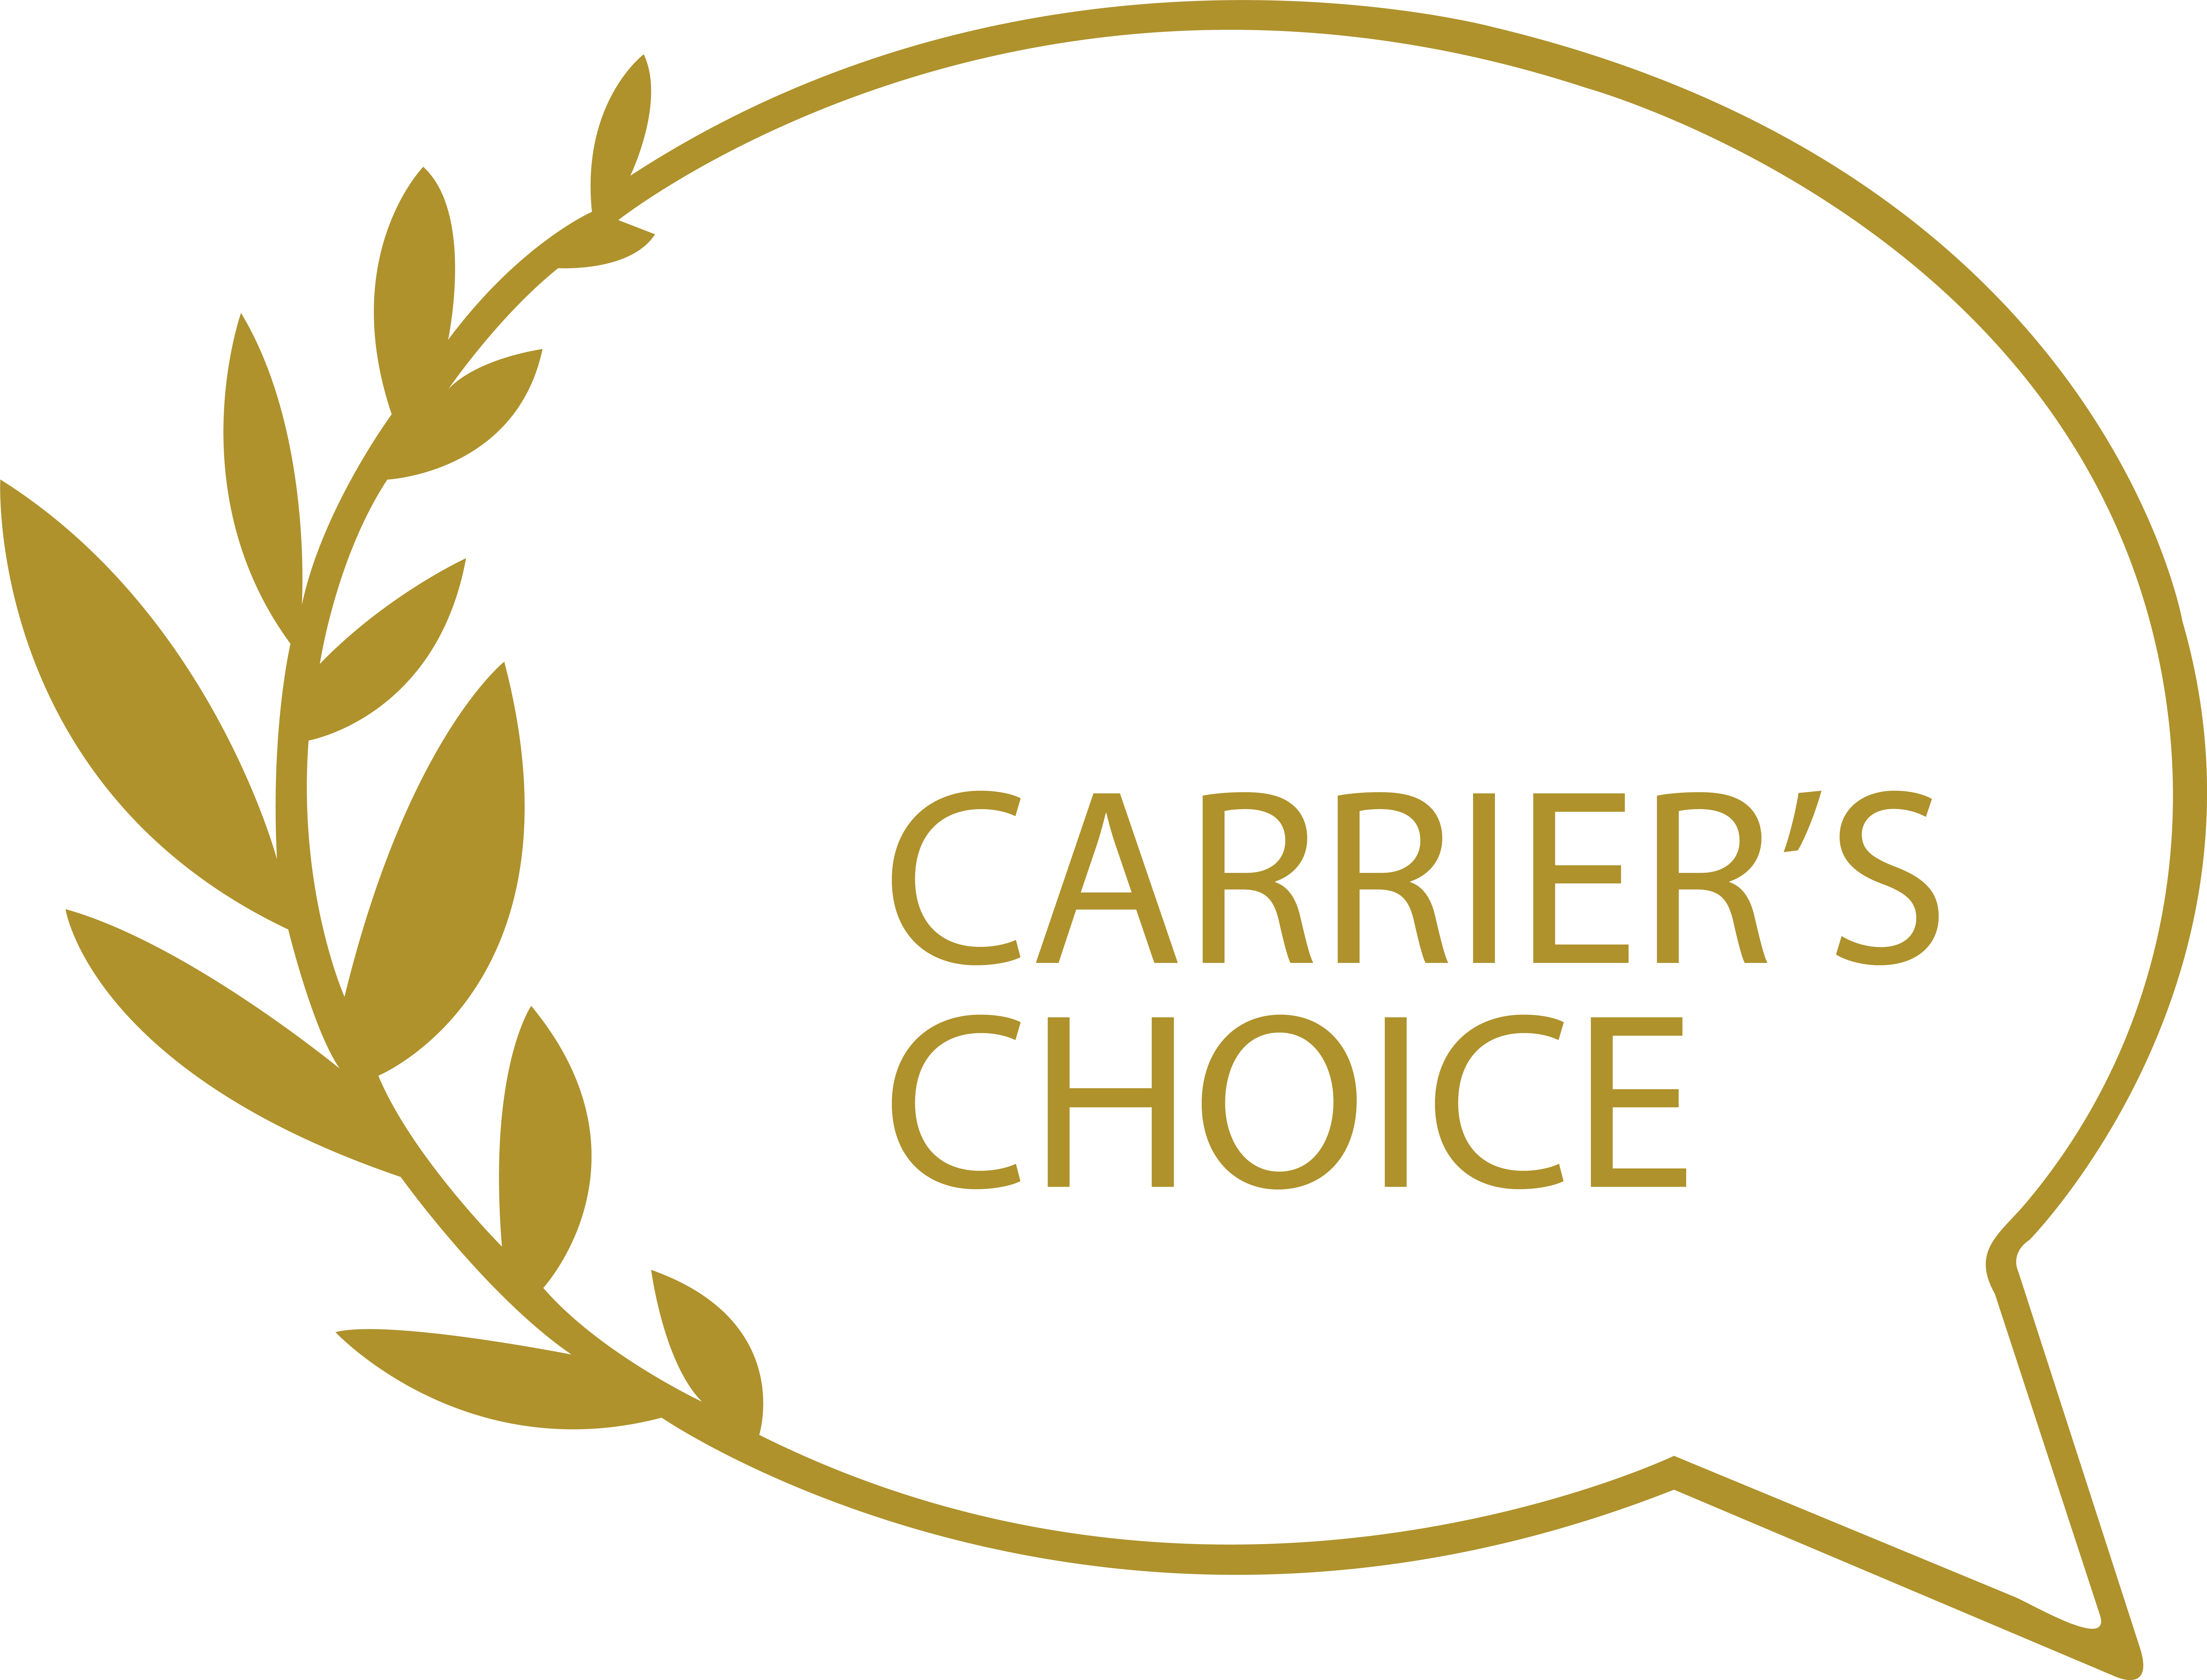 Carrier's Choice!